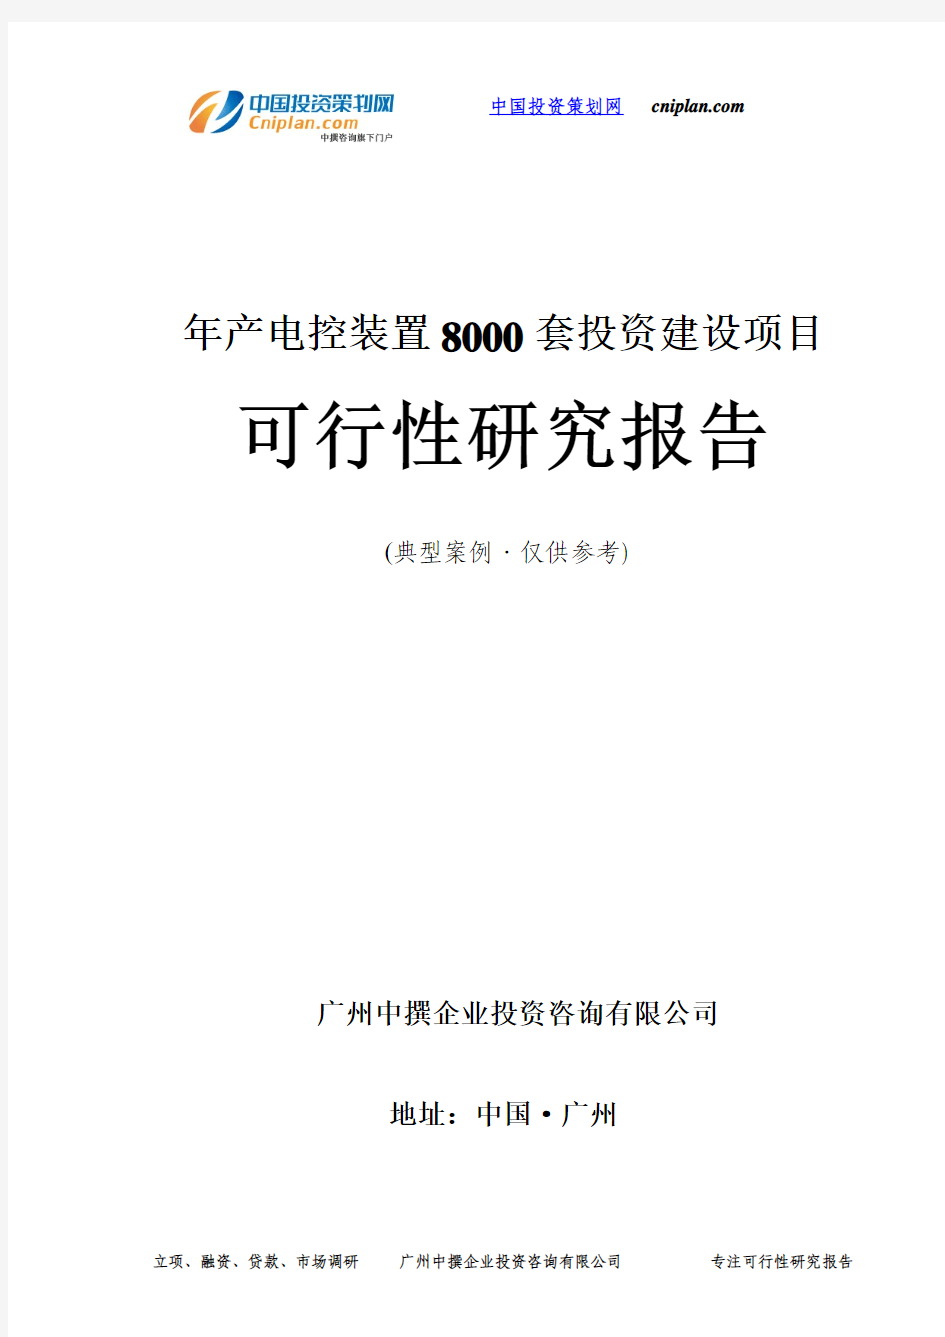 年产电控装置8000套投资建设项目可行性研究报告-广州中撰咨询